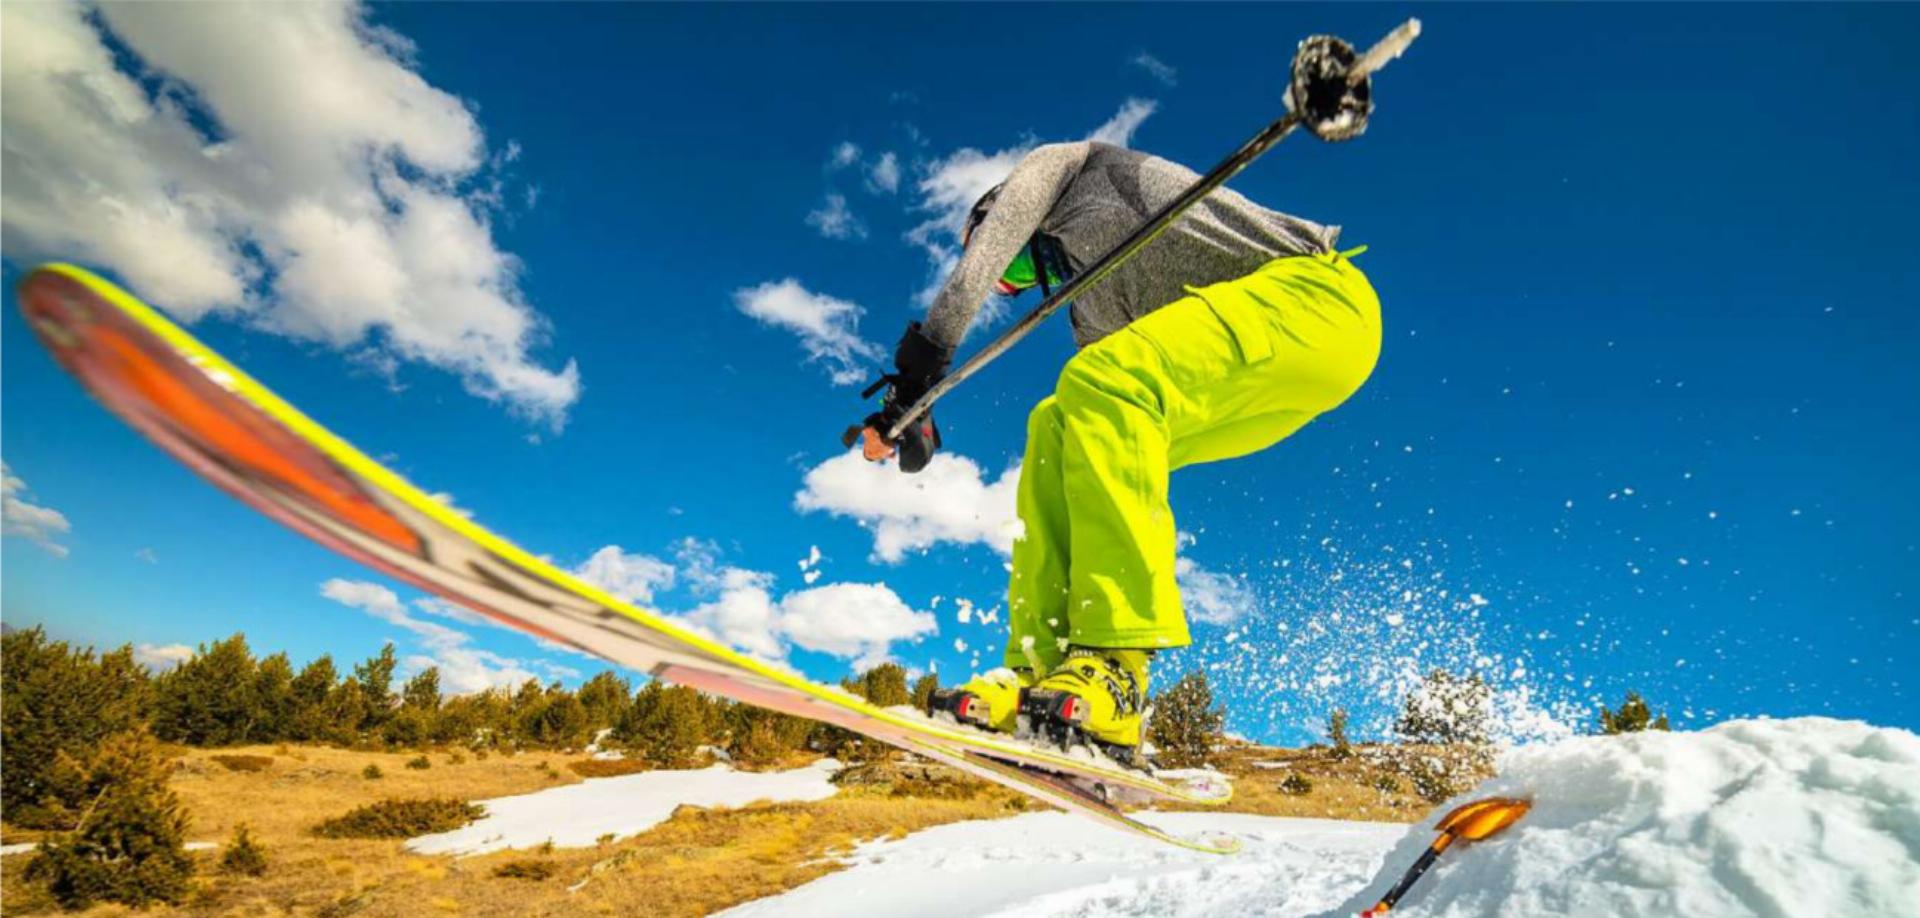 Trotz Schneemangels: Skifahren war im Gebiet Adelboden auch an über die Festtage möglich. Die Nachfrage war aber unterdurchschnittlich. SYMBOLBILD: YANIK88 / STOCK.ADOBE.COM